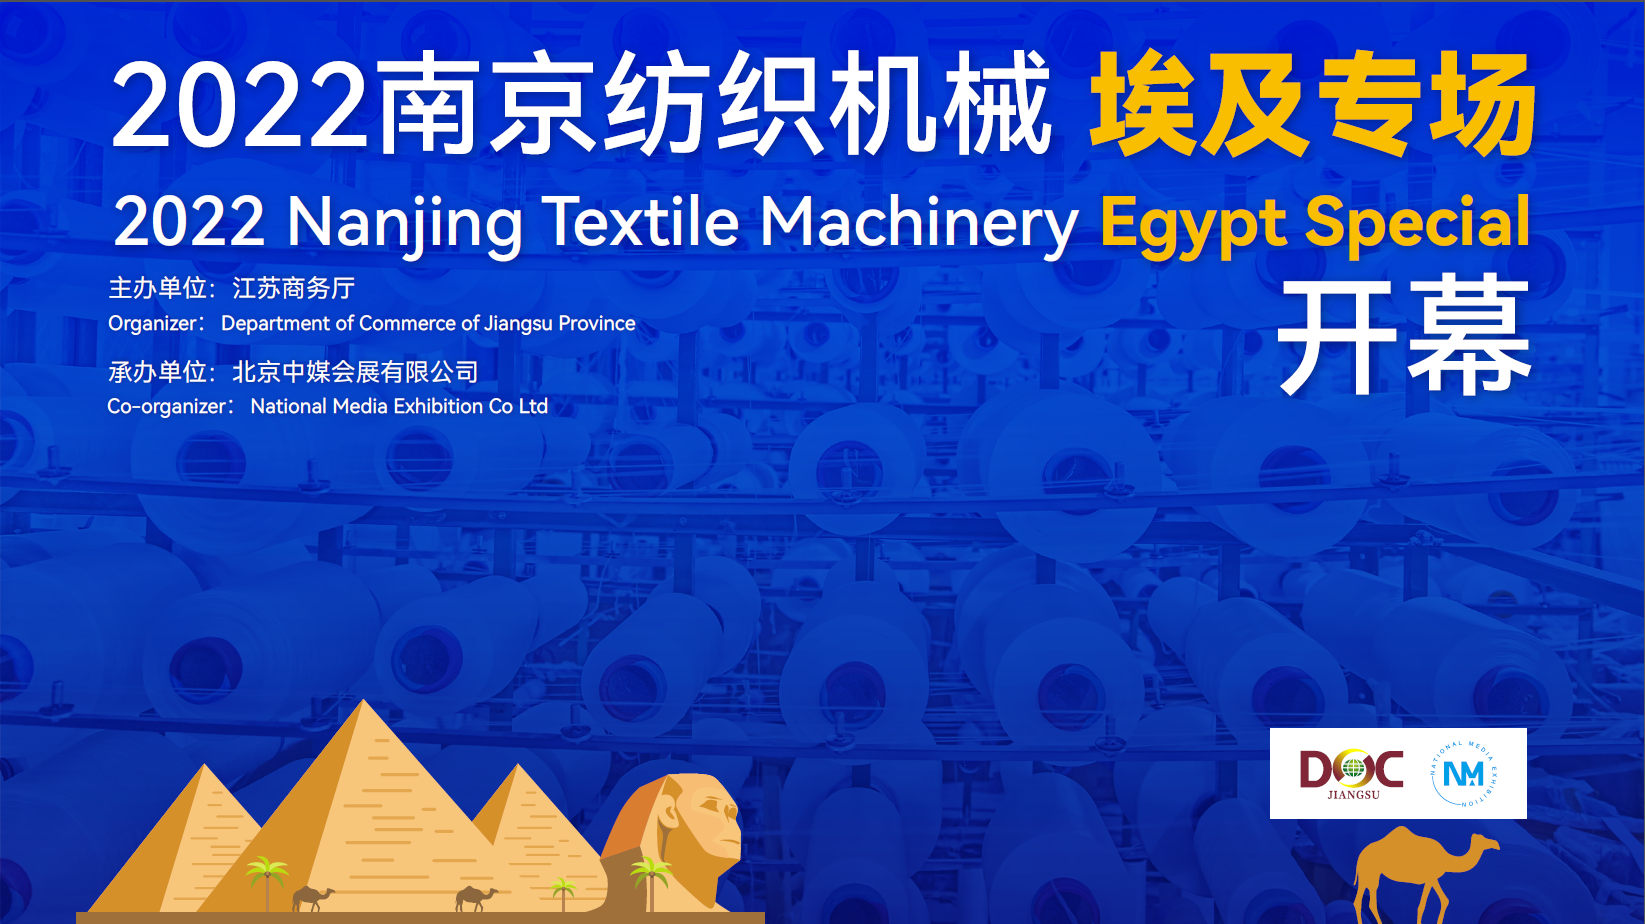 2022年江蘇南京紡織機械埃及專場線上對接會 7月25日